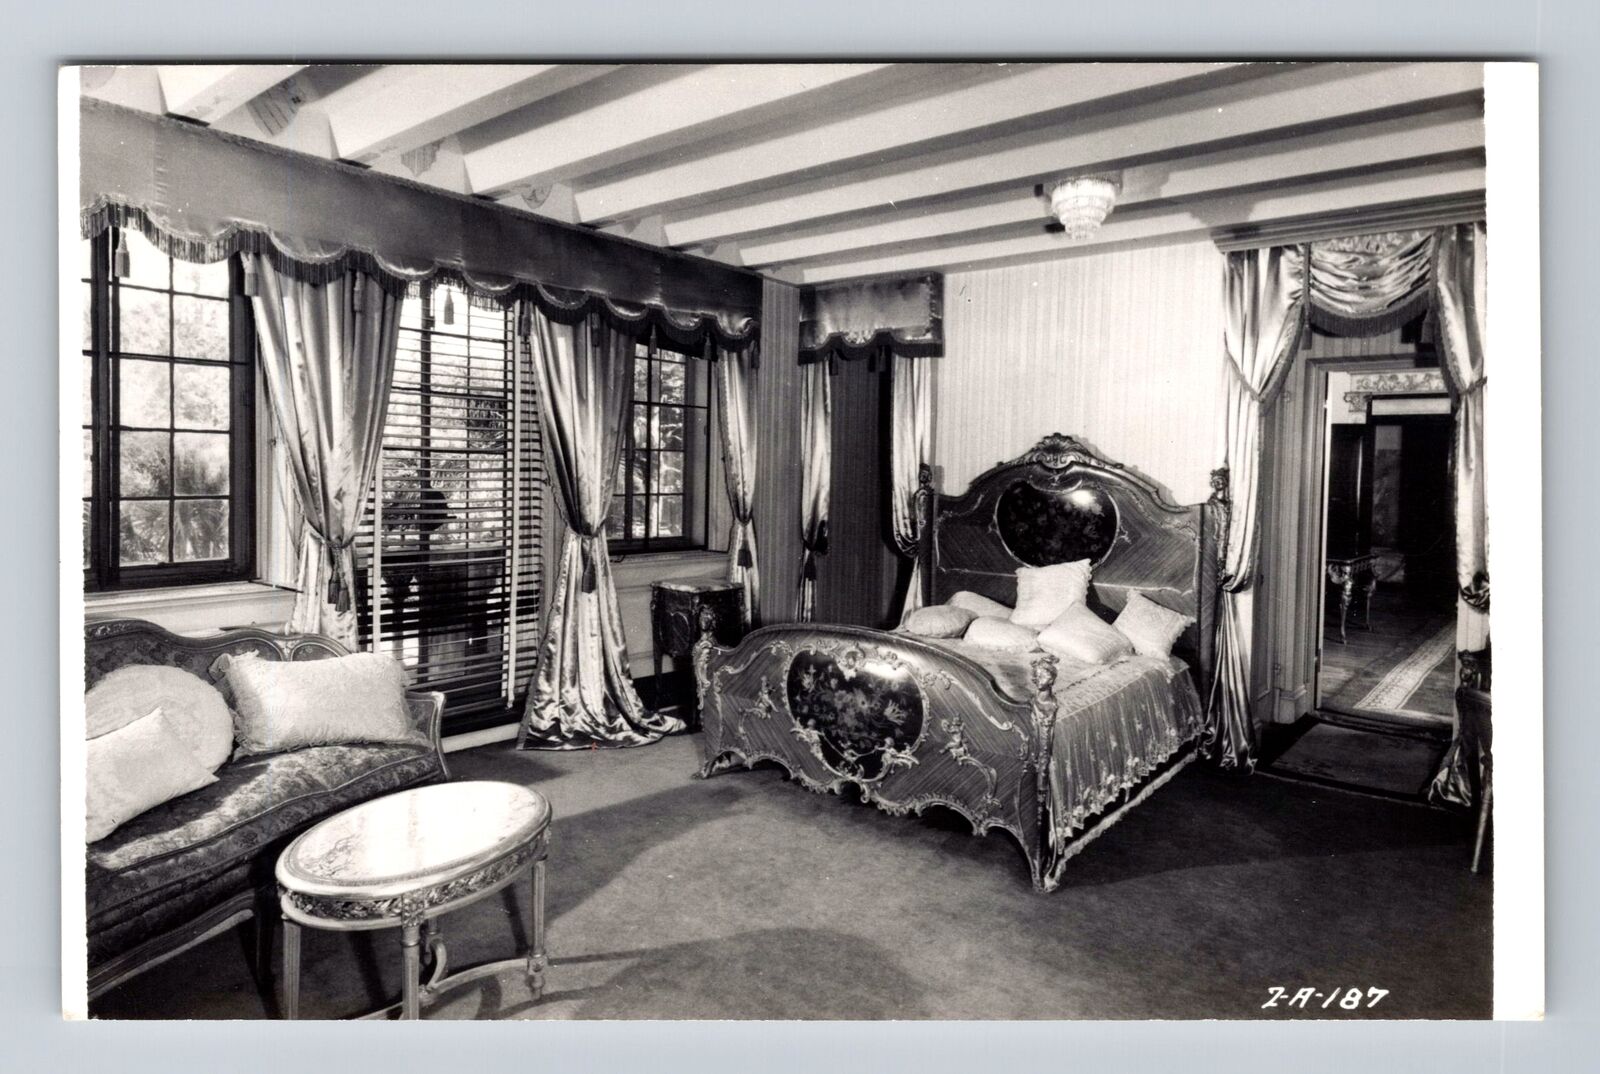 Sarasota FL-Florida, Mable Ringling's Bedroom, Antique Vintage Postcard